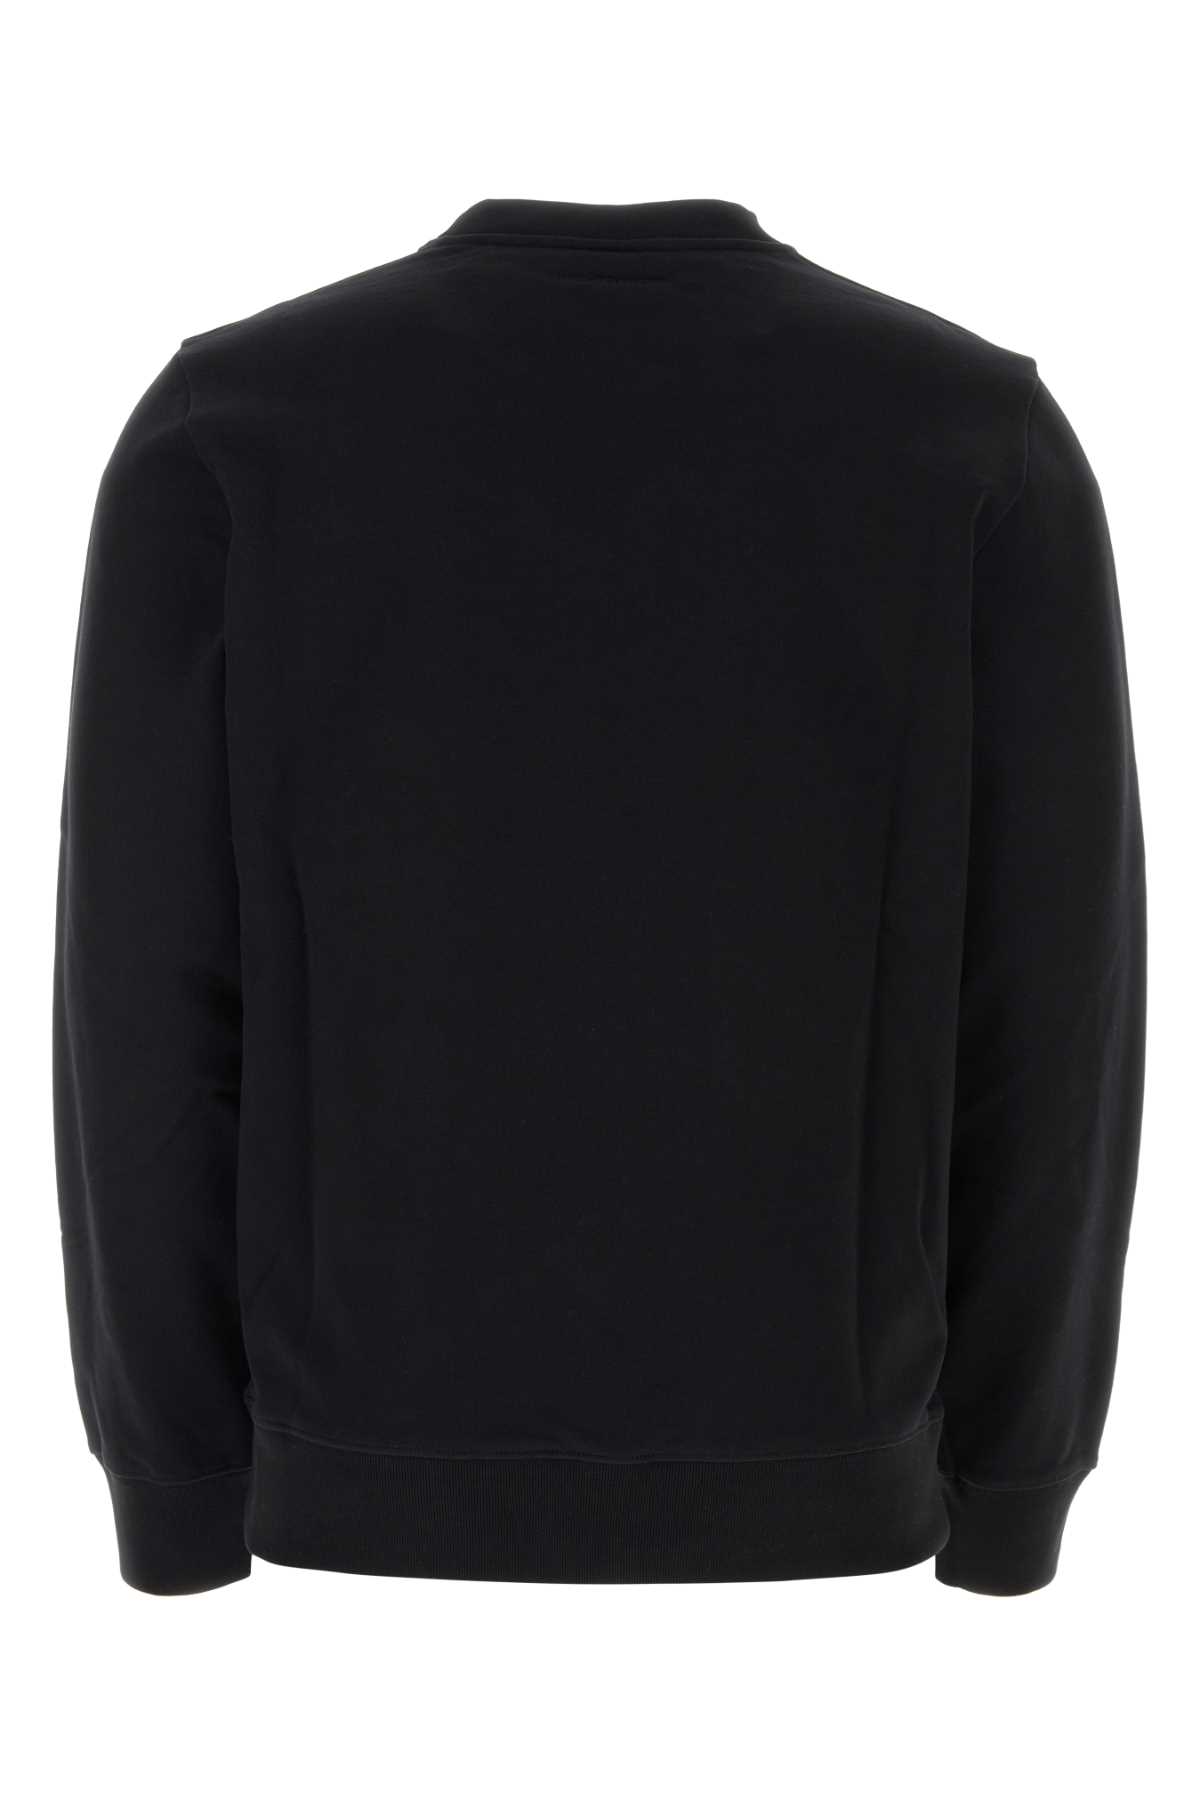 Courrèges Black Cotton Sweatshirt